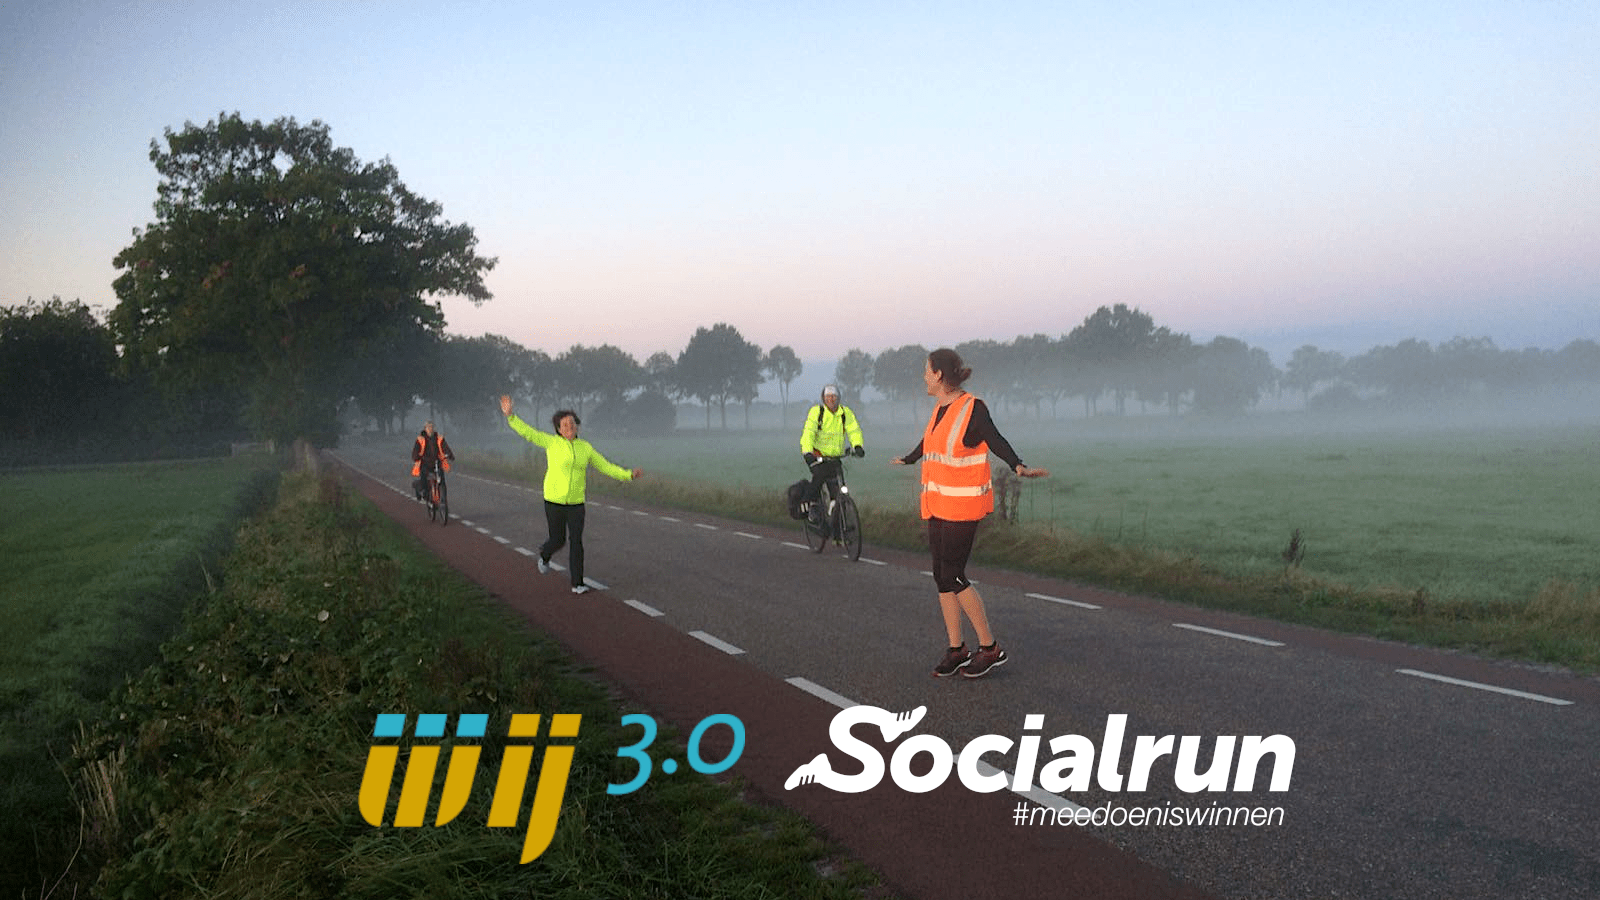 Je bekijkt nu Socialrun 2021: Sponsor team WIJ 3.0 en ondersteun Socialrun